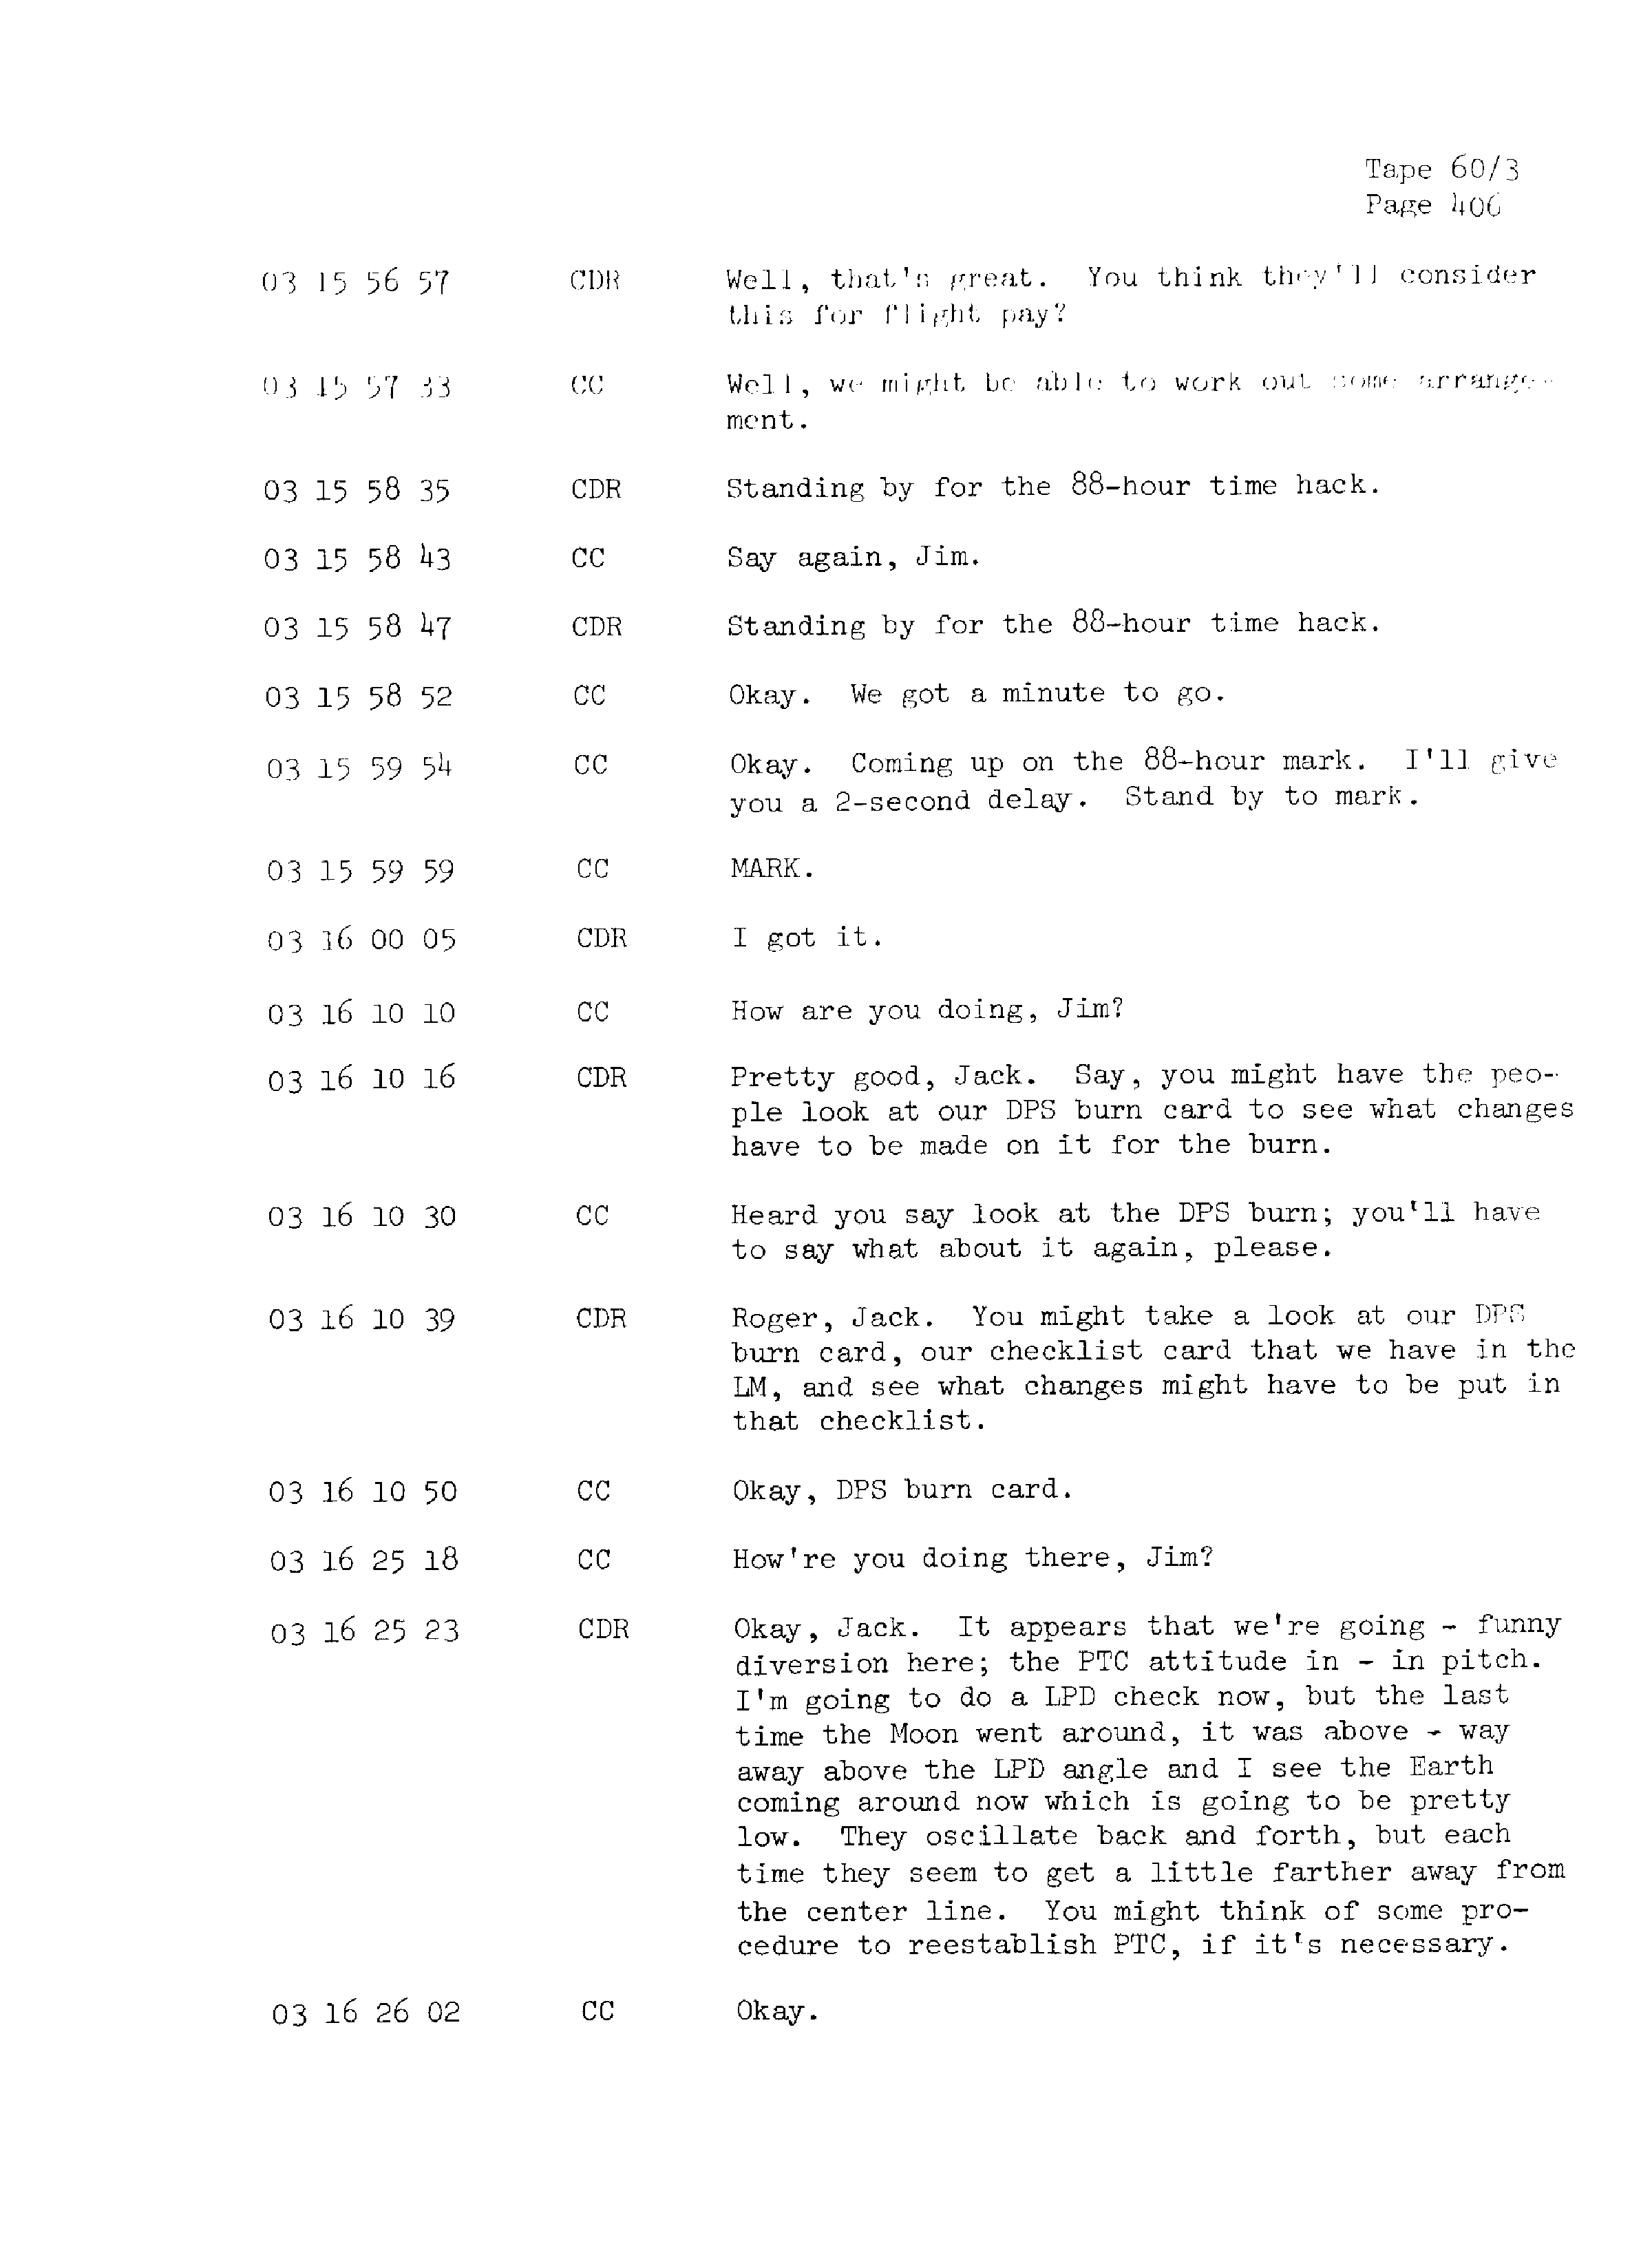 Page 413 of Apollo 13’s original transcript